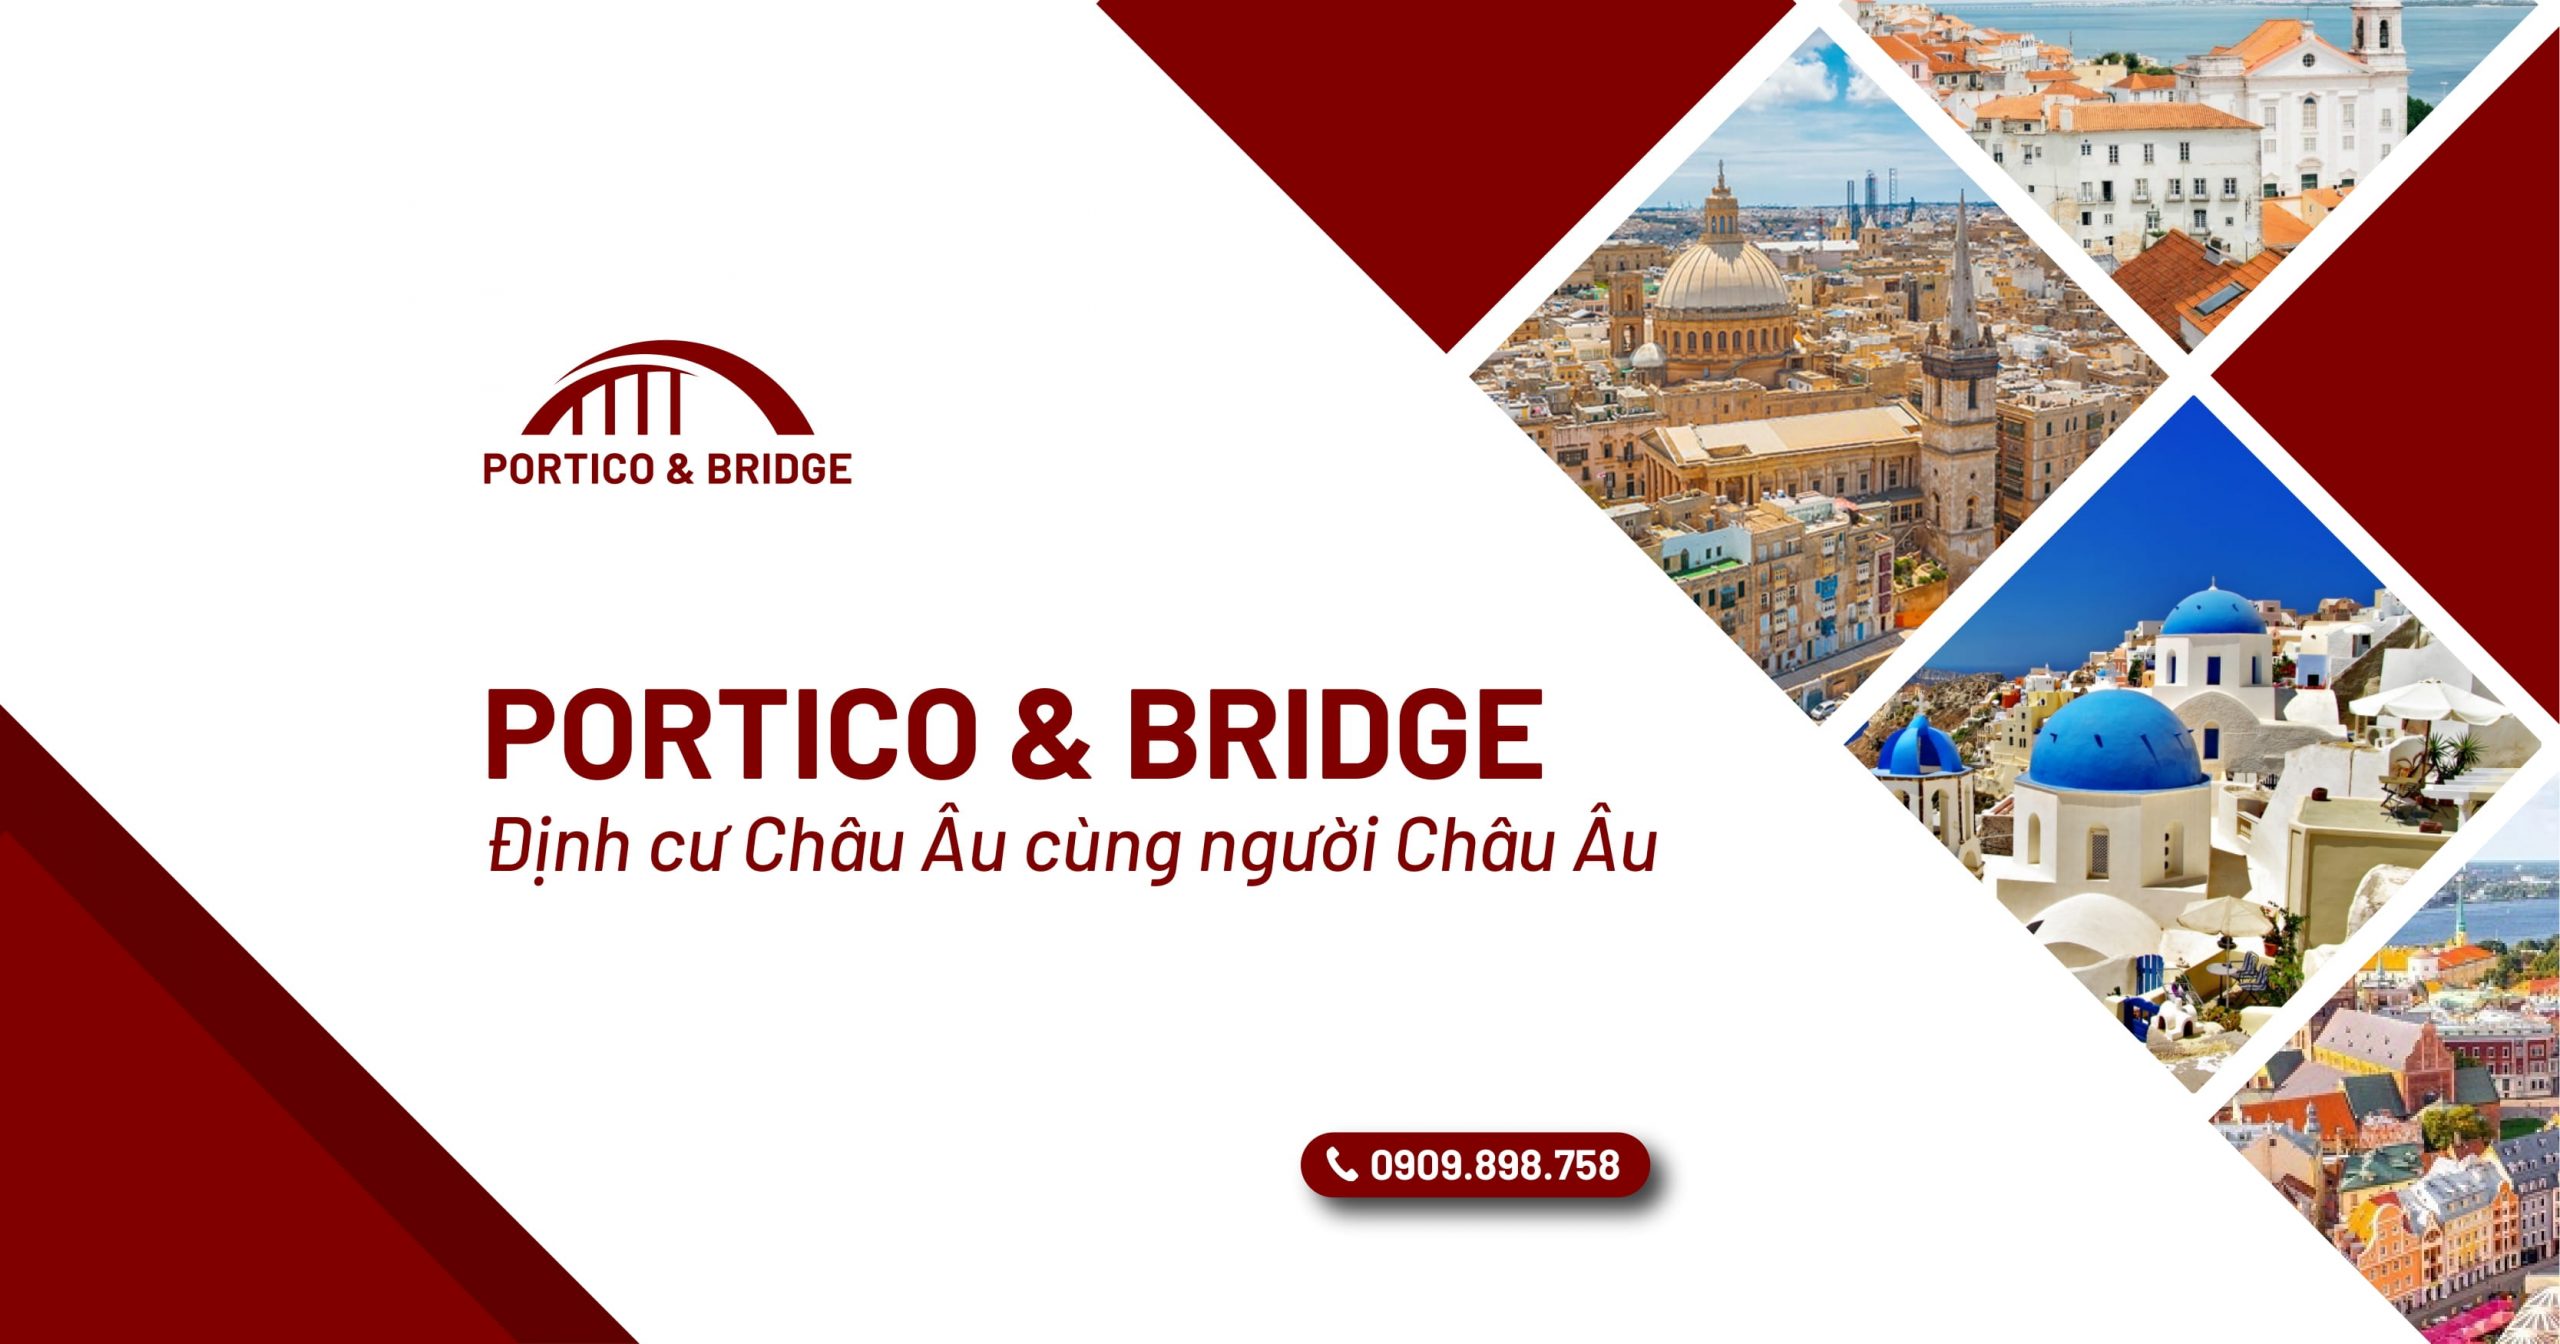 Portico & Bridge